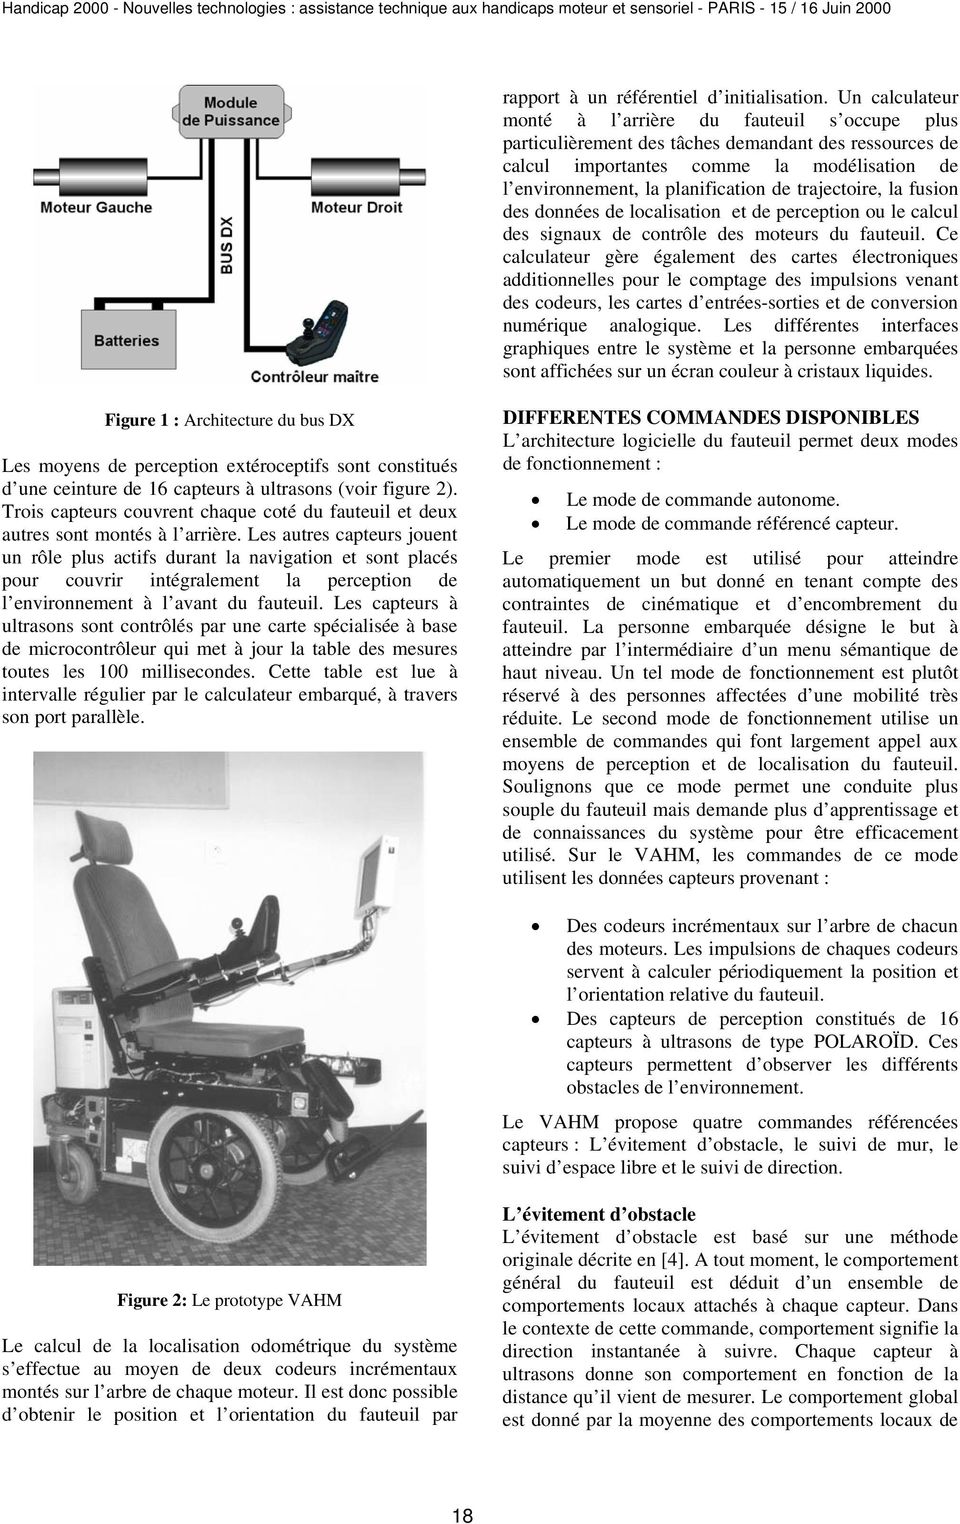 trajectoire, la fusion des données de localisation et de perception ou le calcul des signaux de contrôle des moteurs du fauteuil.